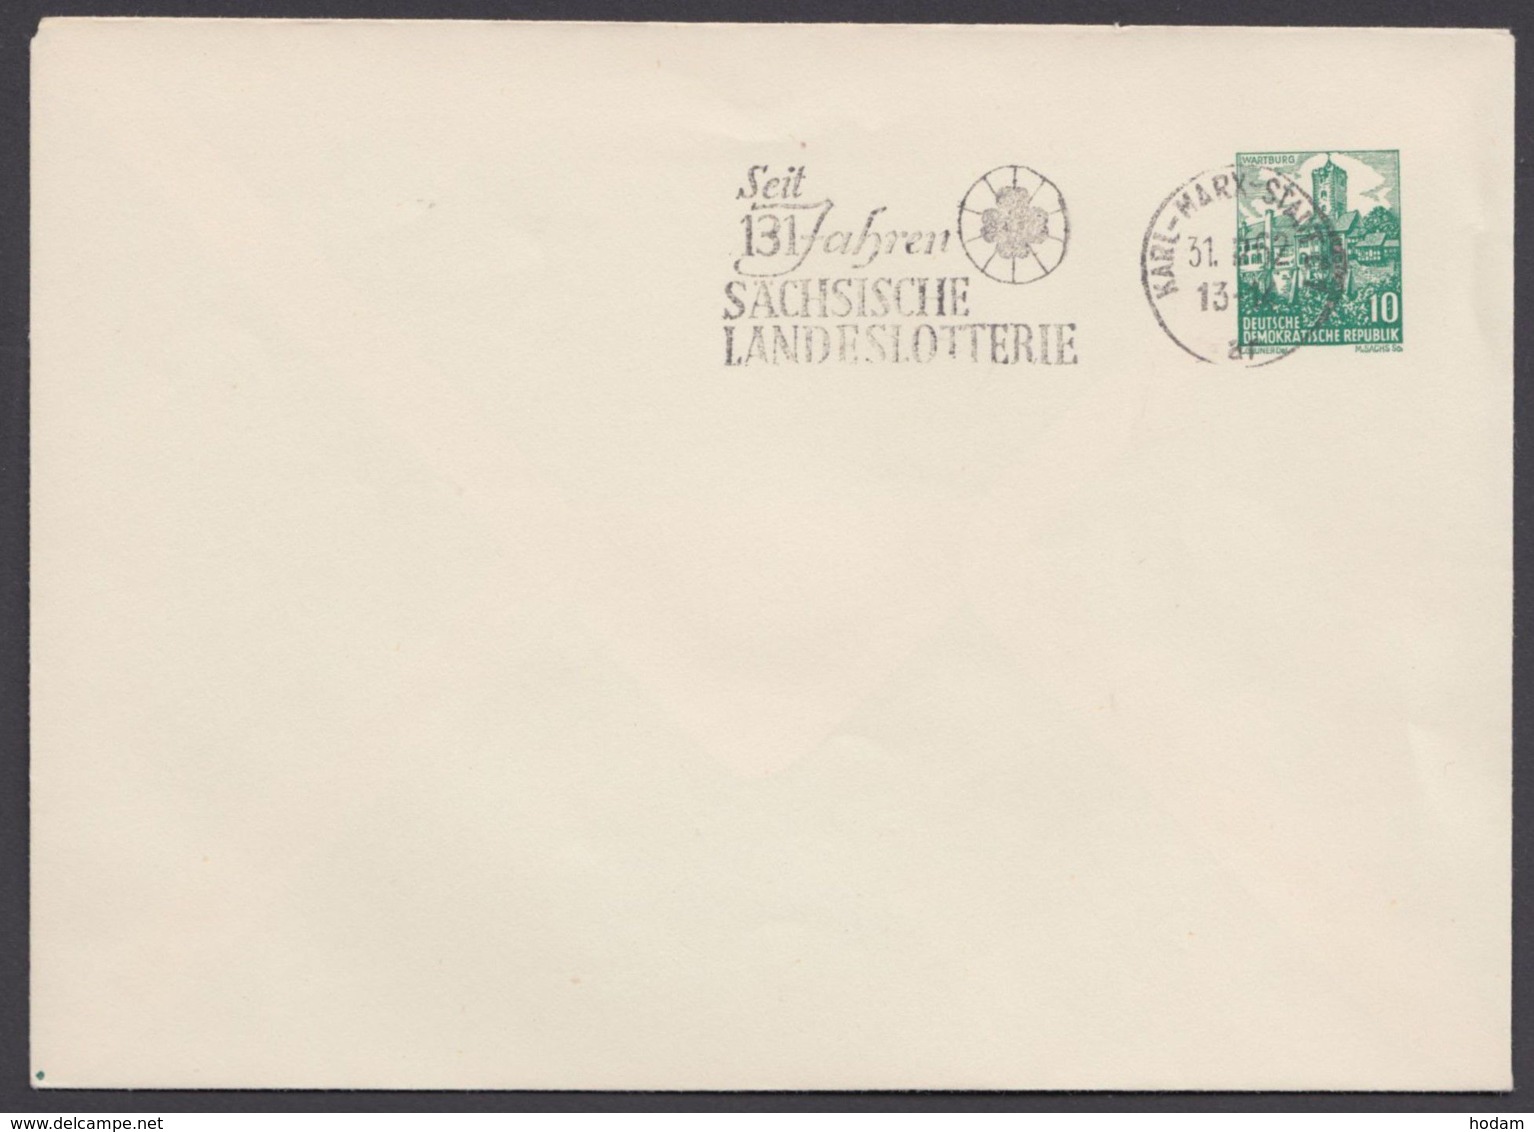 Mi- Nr. PU 13 A1/01, Blankoumschlag, Werbestempel "sächsische Landeslotterie", 1962 - Private Covers - Used